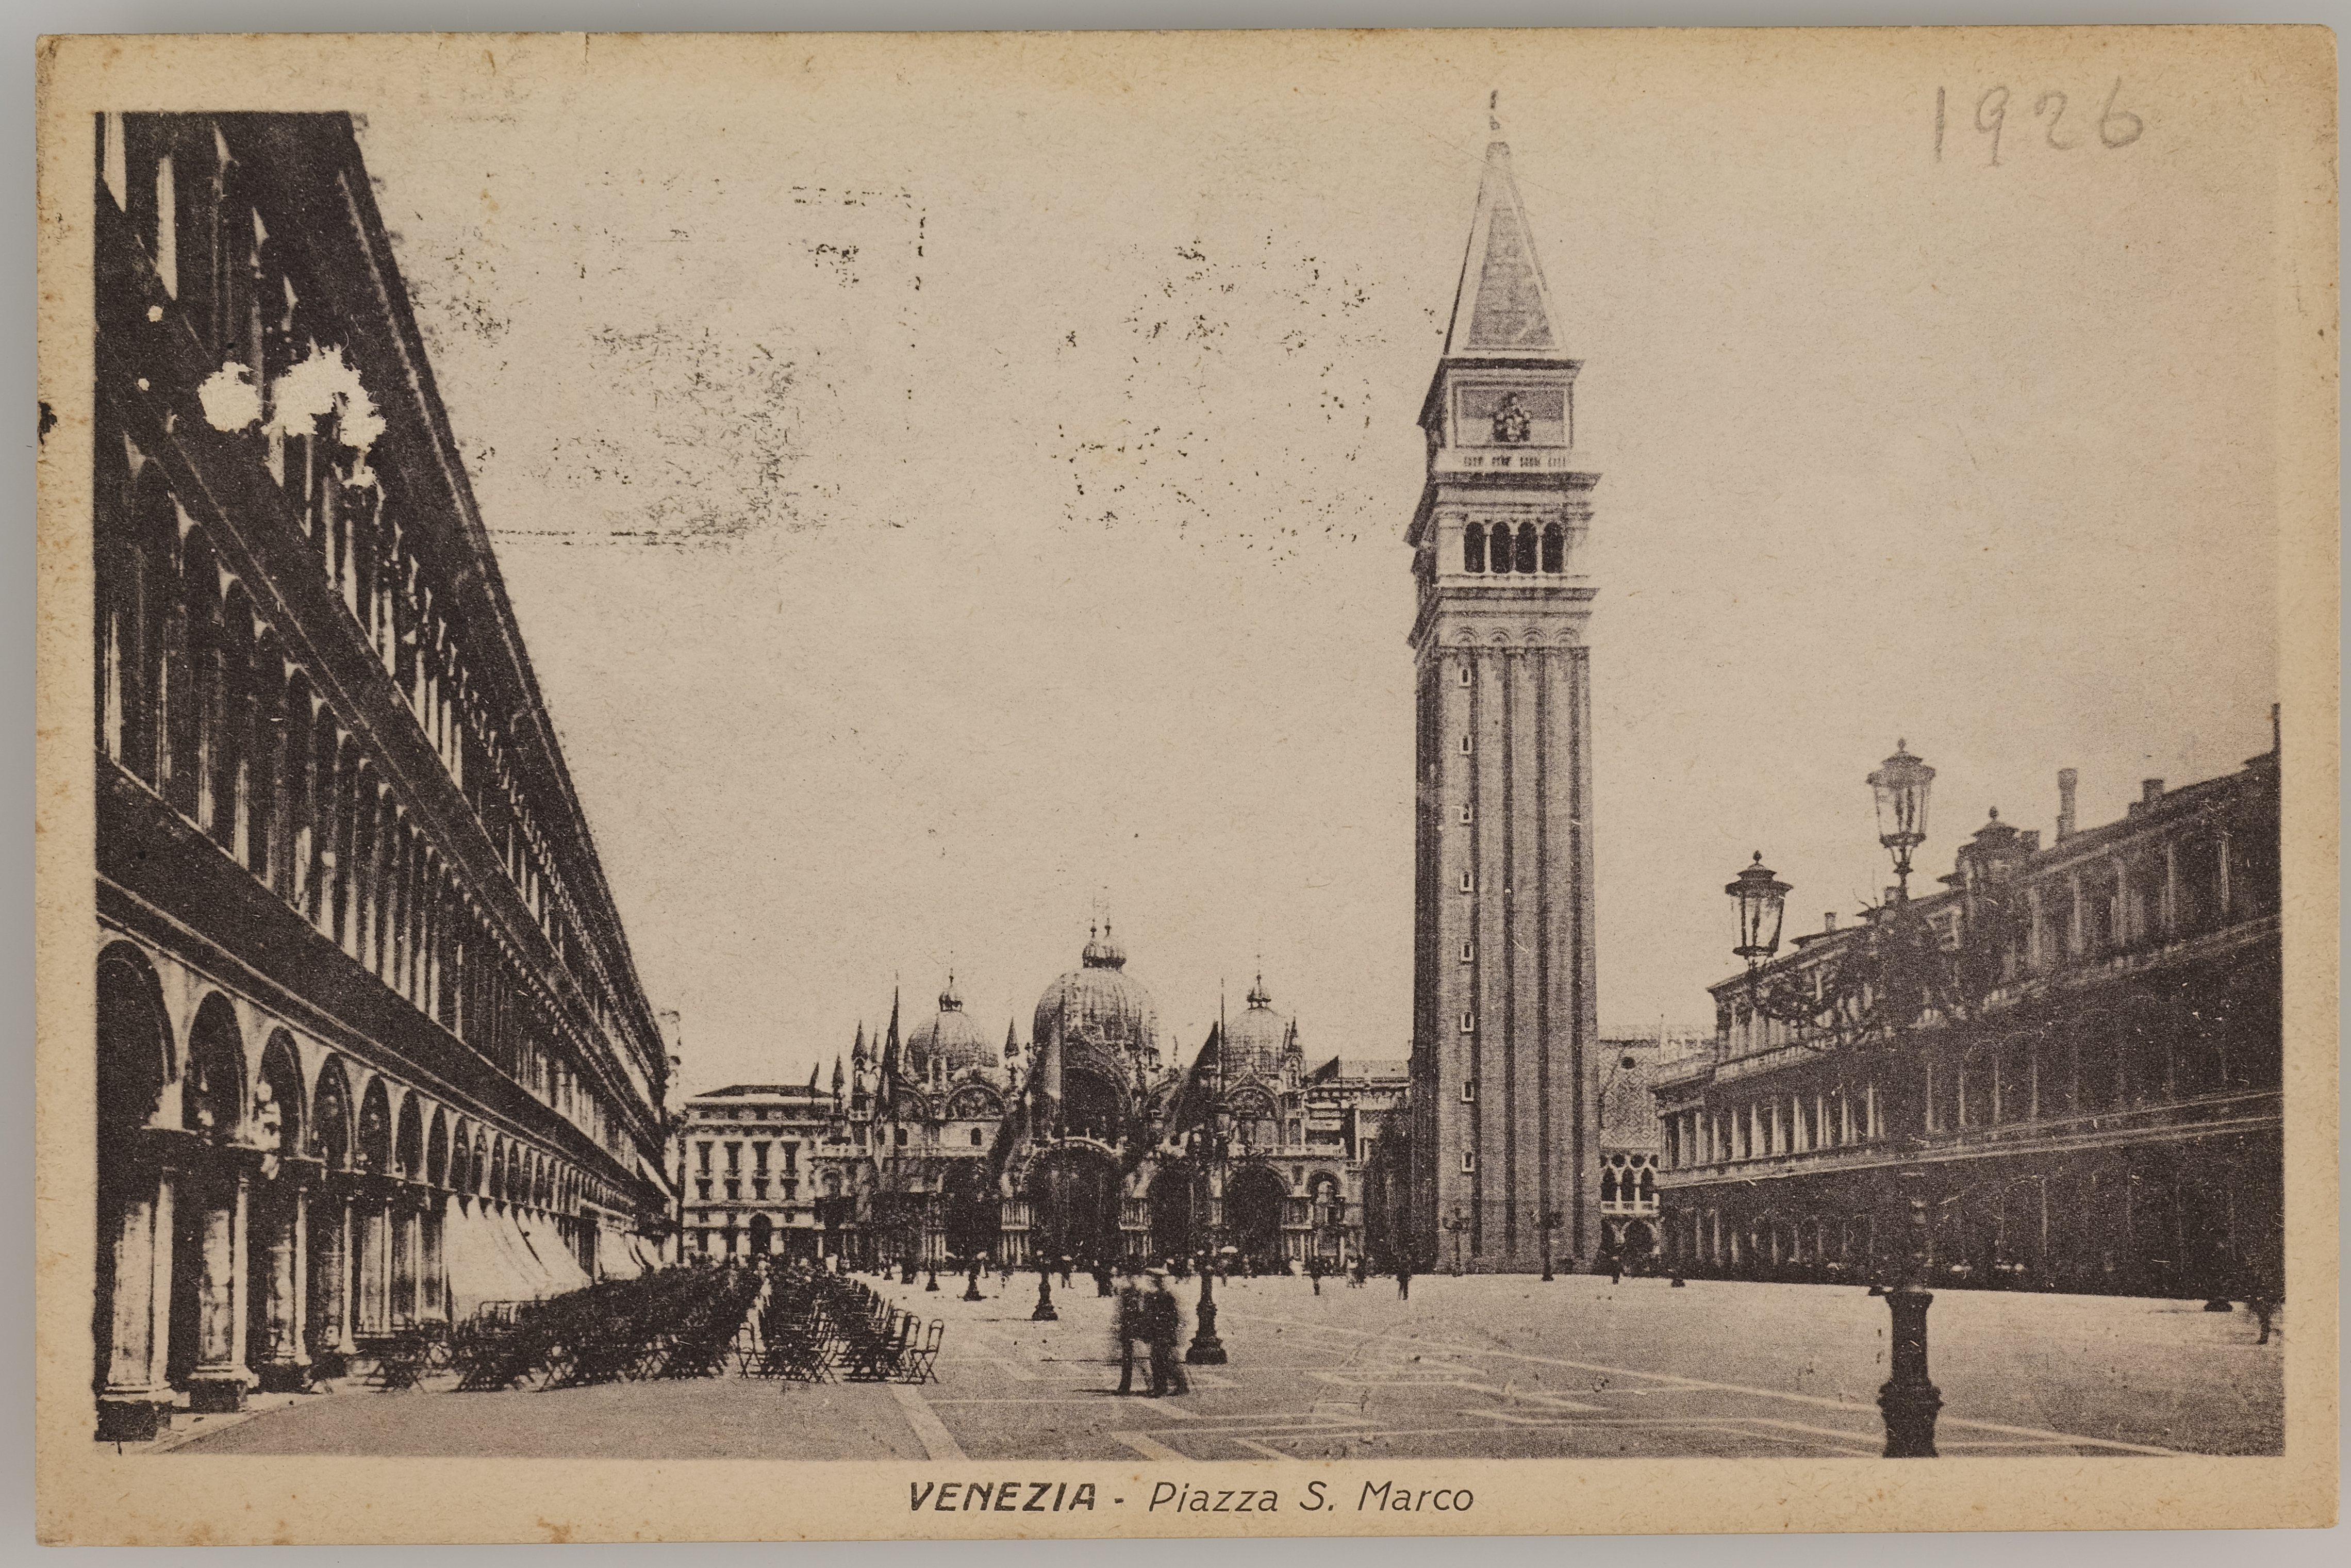 Fotografo non identificato, Venezia - Piazza San Marco, 1926, stampa fotomeccanica/ cartolina postale, DVC001378.